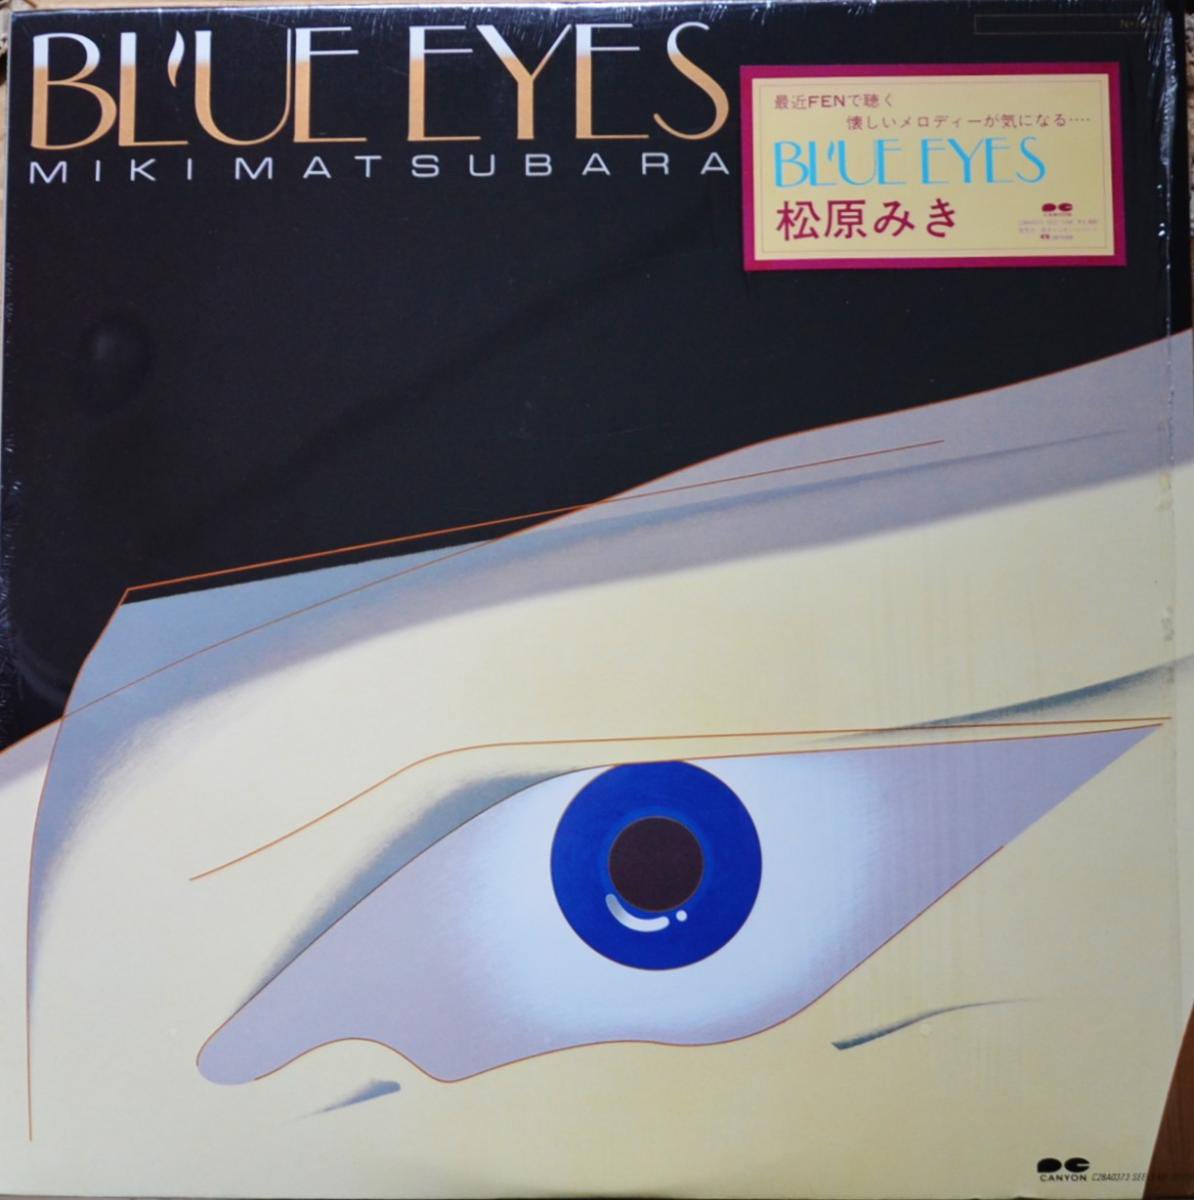 松原みき Miki Matsubara 前田憲男 Norio Maeda ブルーアイズ Blue Eyes Lp Hip Tank Records